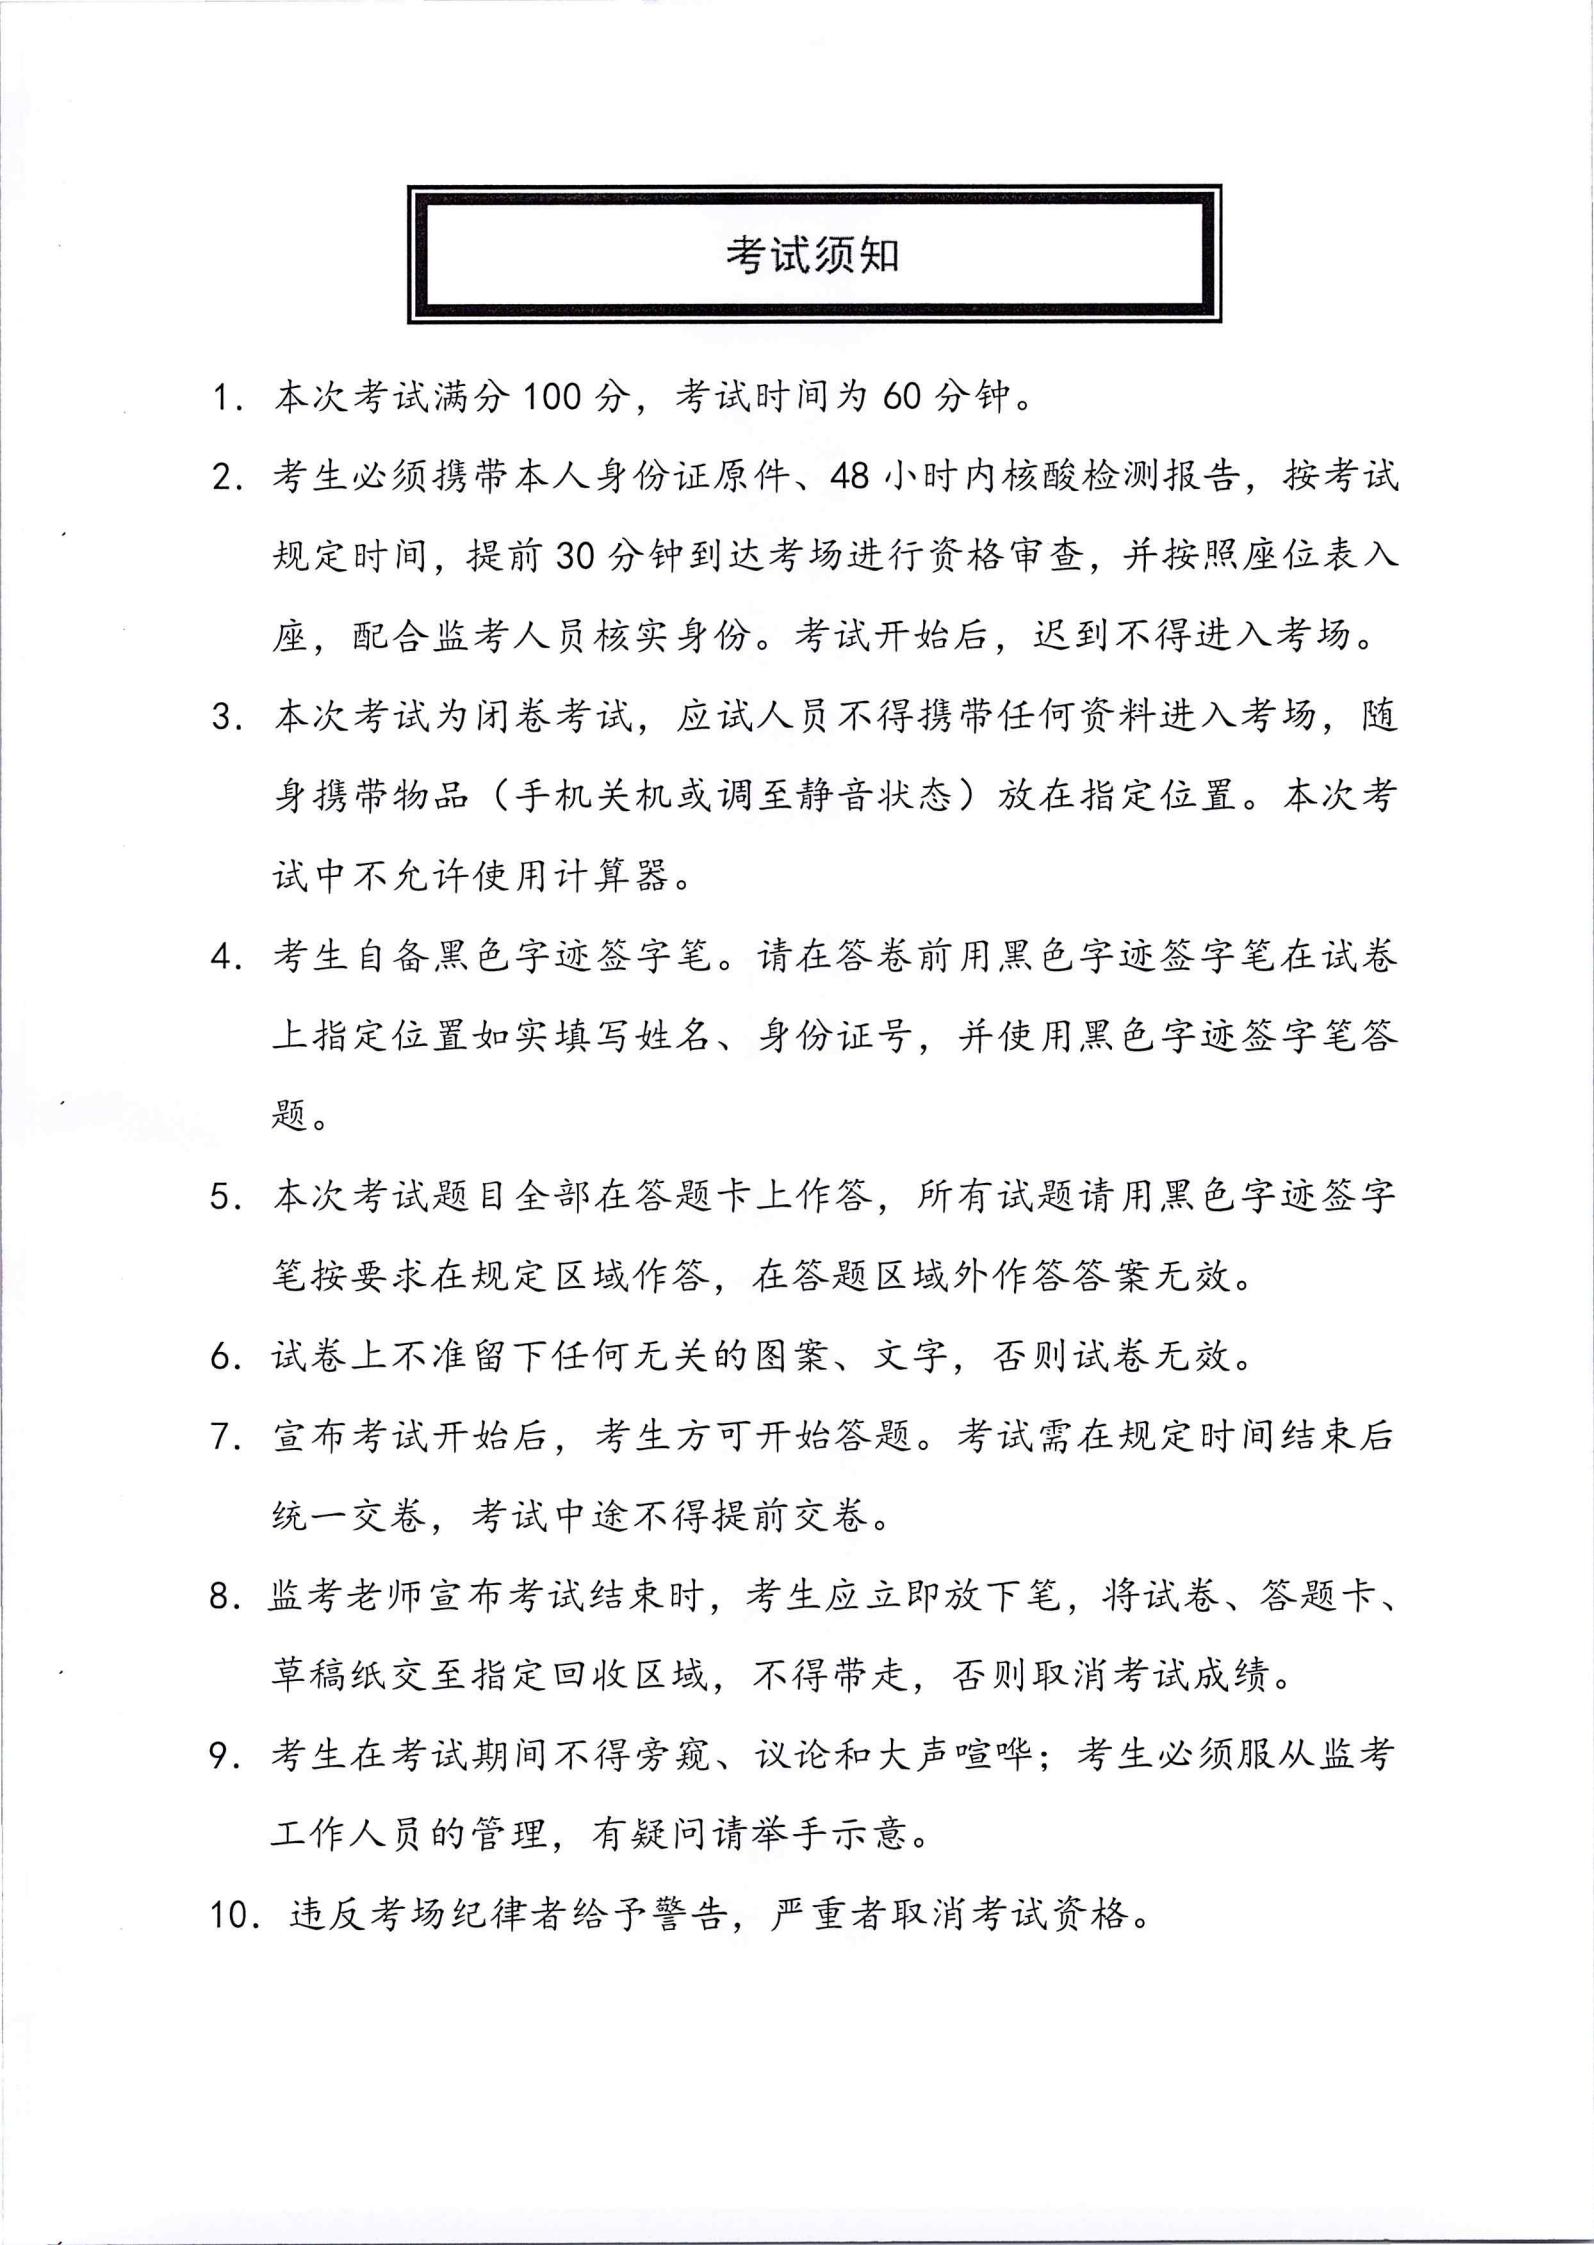 江南平台(中国)有限公司有限公司2022年第一批社会公开招聘笔试公告_05.jpg